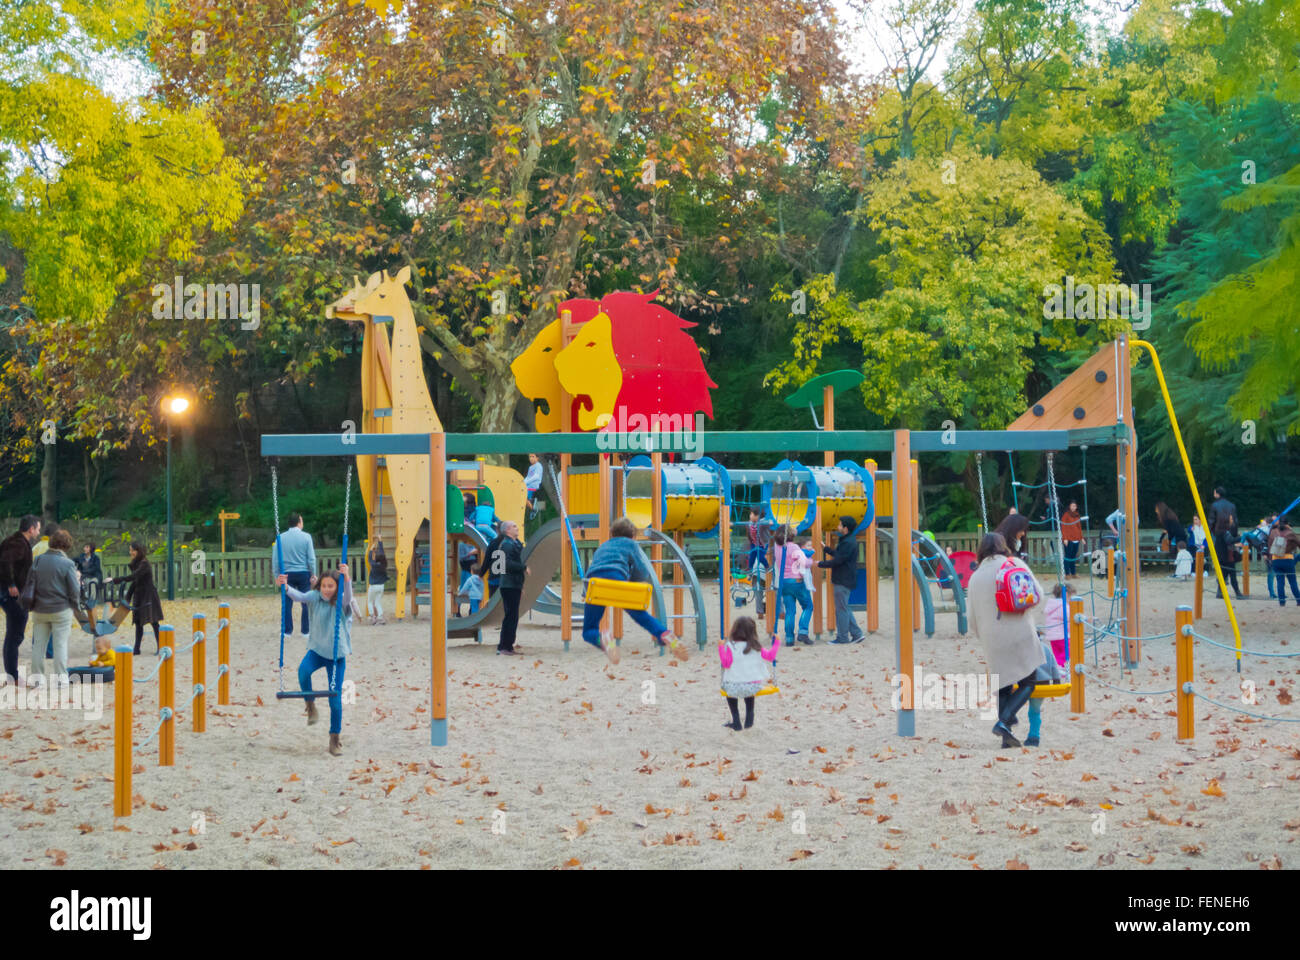 Immagini Stock - Bambina Di 5 Anni Sorridente Nel Parco Giochi Per Bambini.  Image 162364659